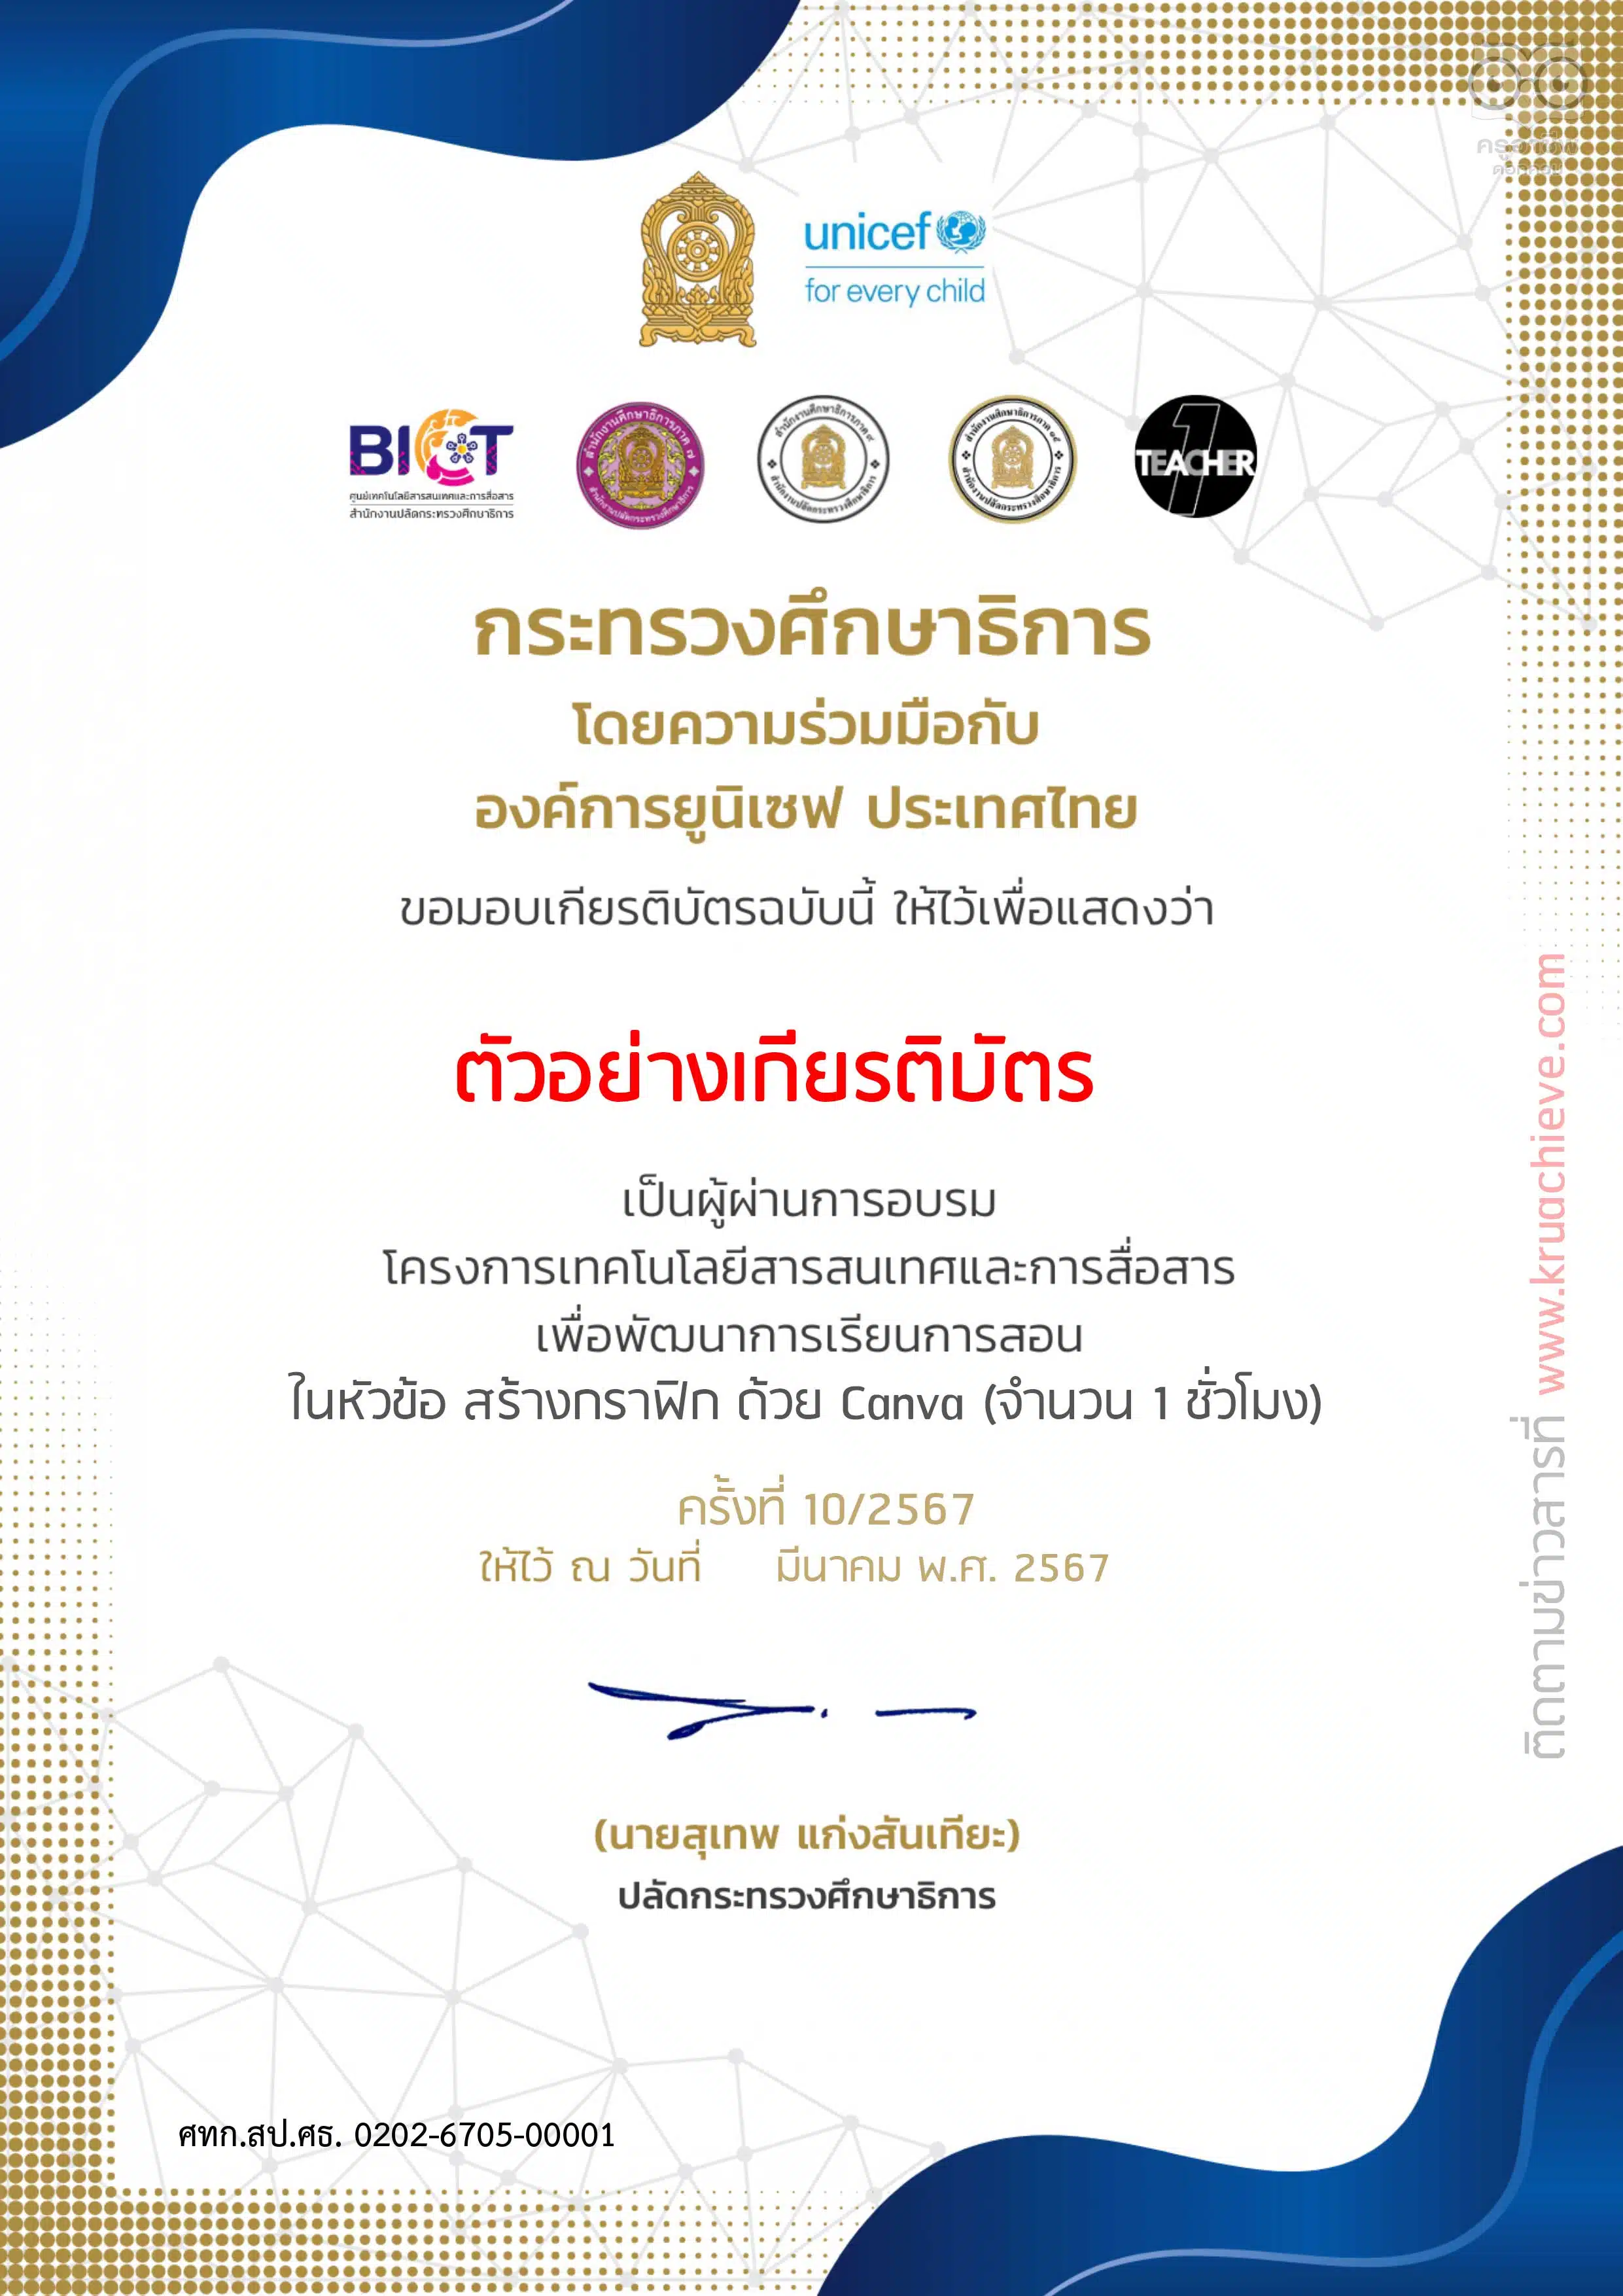 ลิงก์ลงทะเบียนอบรม OTT LIVE ครั้งที่ 10 สร้างกราฟิก ด้วย Canva วันพฤหัสบดี ที่ 14 มีนาคม 2567 รับเกียรติบัตรฟรี โดยสำนักงานปลัดกระทรวงศึกษาธิการ และองค์การยูนิเซฟ ประเทศไทย